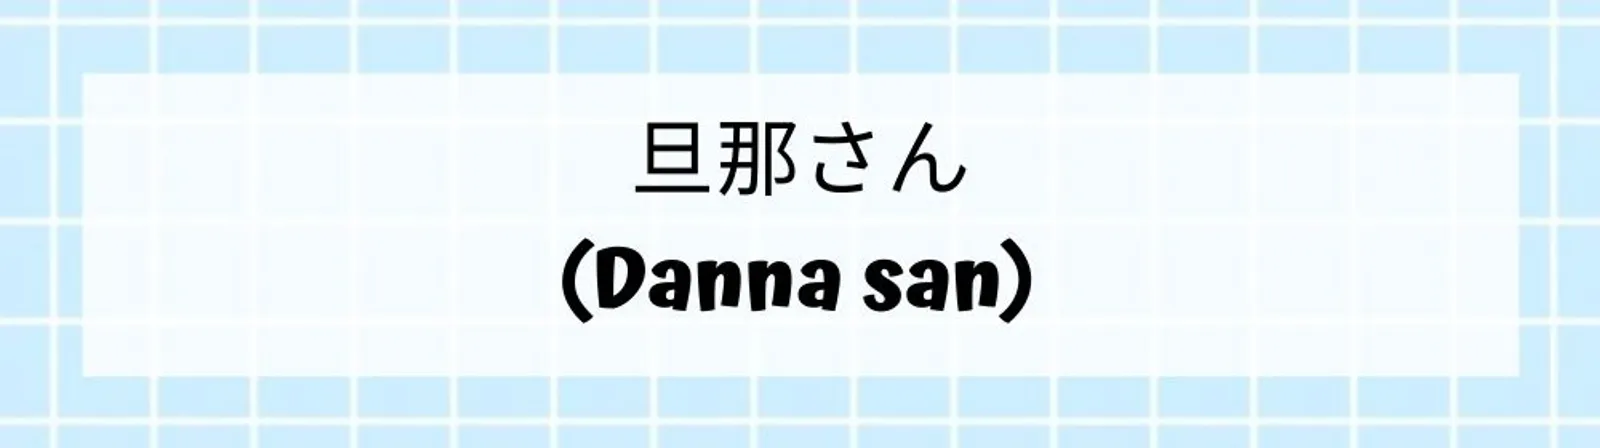 20 Panggilan Sayang dalam Bahasa Jepang Terlengkap